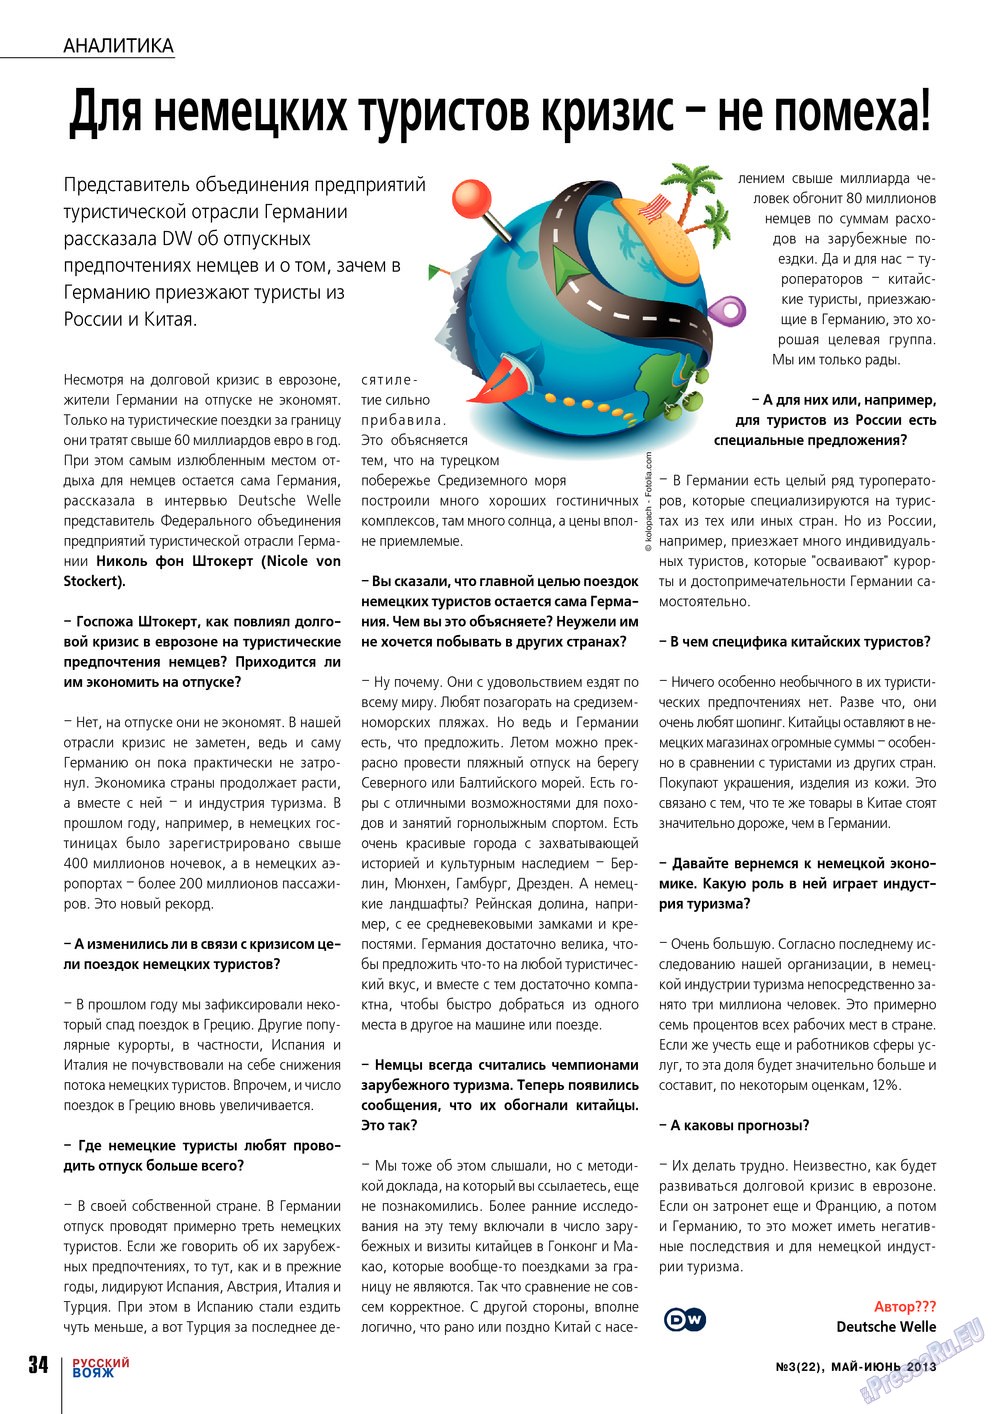 Русский вояж (журнал). 2013 год, номер 22, стр. 34